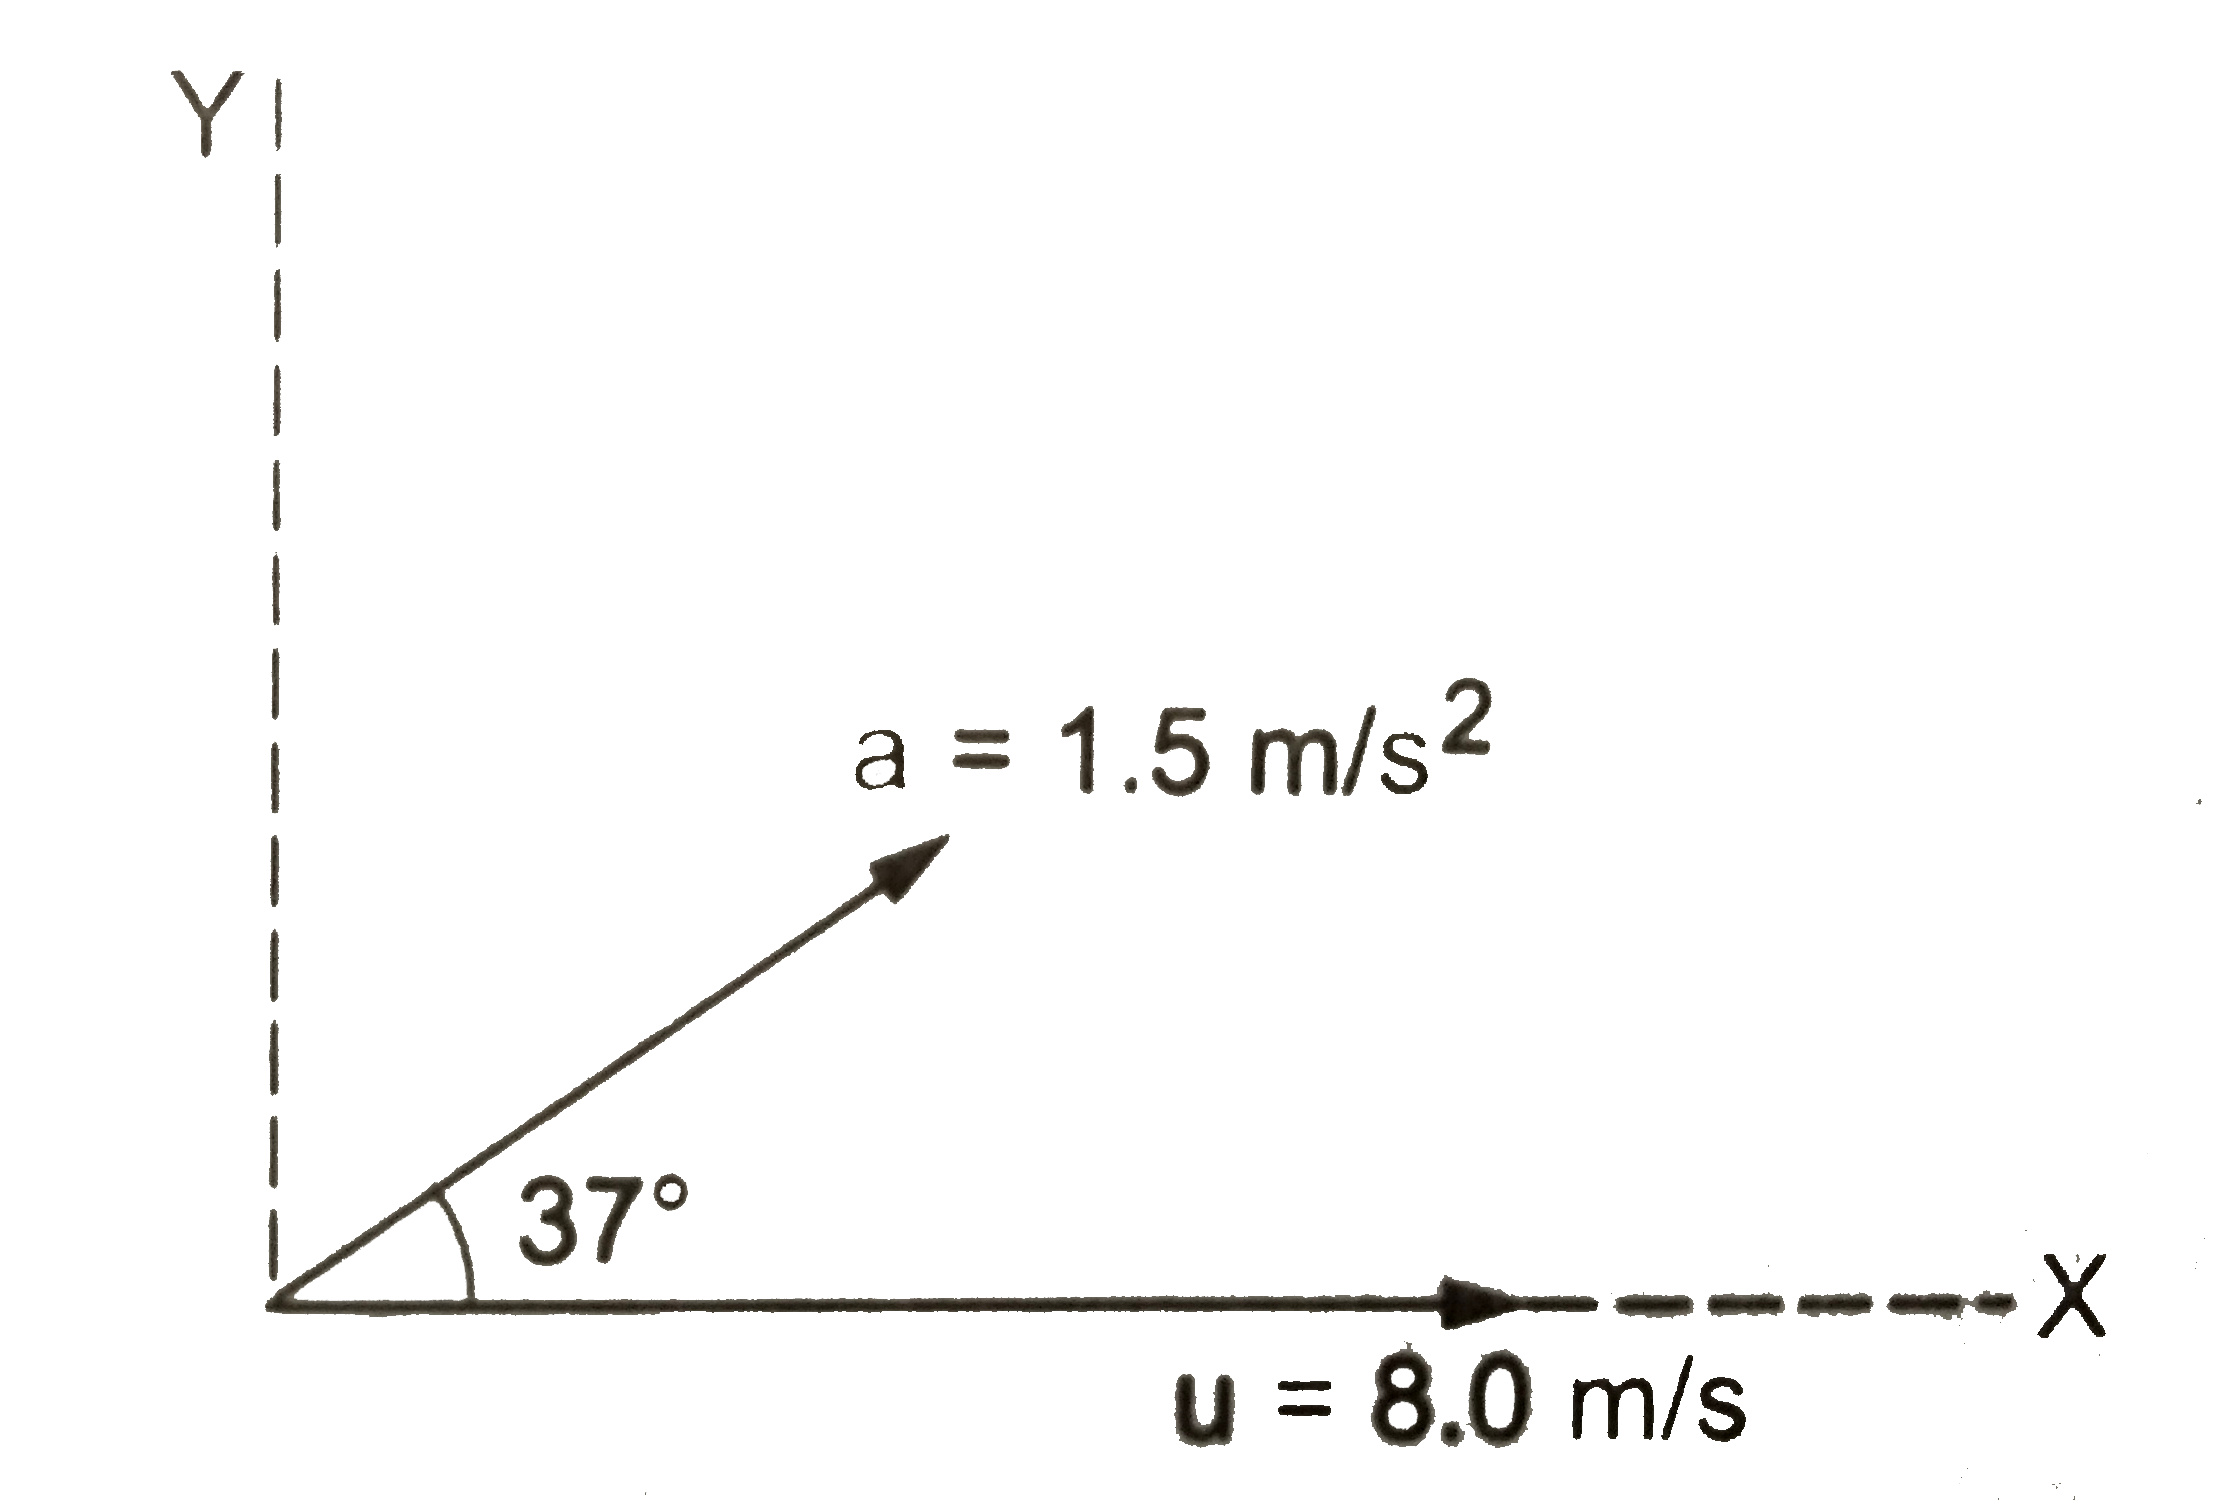 एक कण xy-तल में एकसमान त्वरण के साथ चलता है । यह त्वरण x-अक्ष से 37^(@)  का कोण बनता है (चित्र ) । समय t = 0 पर कण मूलबिंदु पर है तथा इसका वेग x-अक्ष की ओर 8.0 m//s